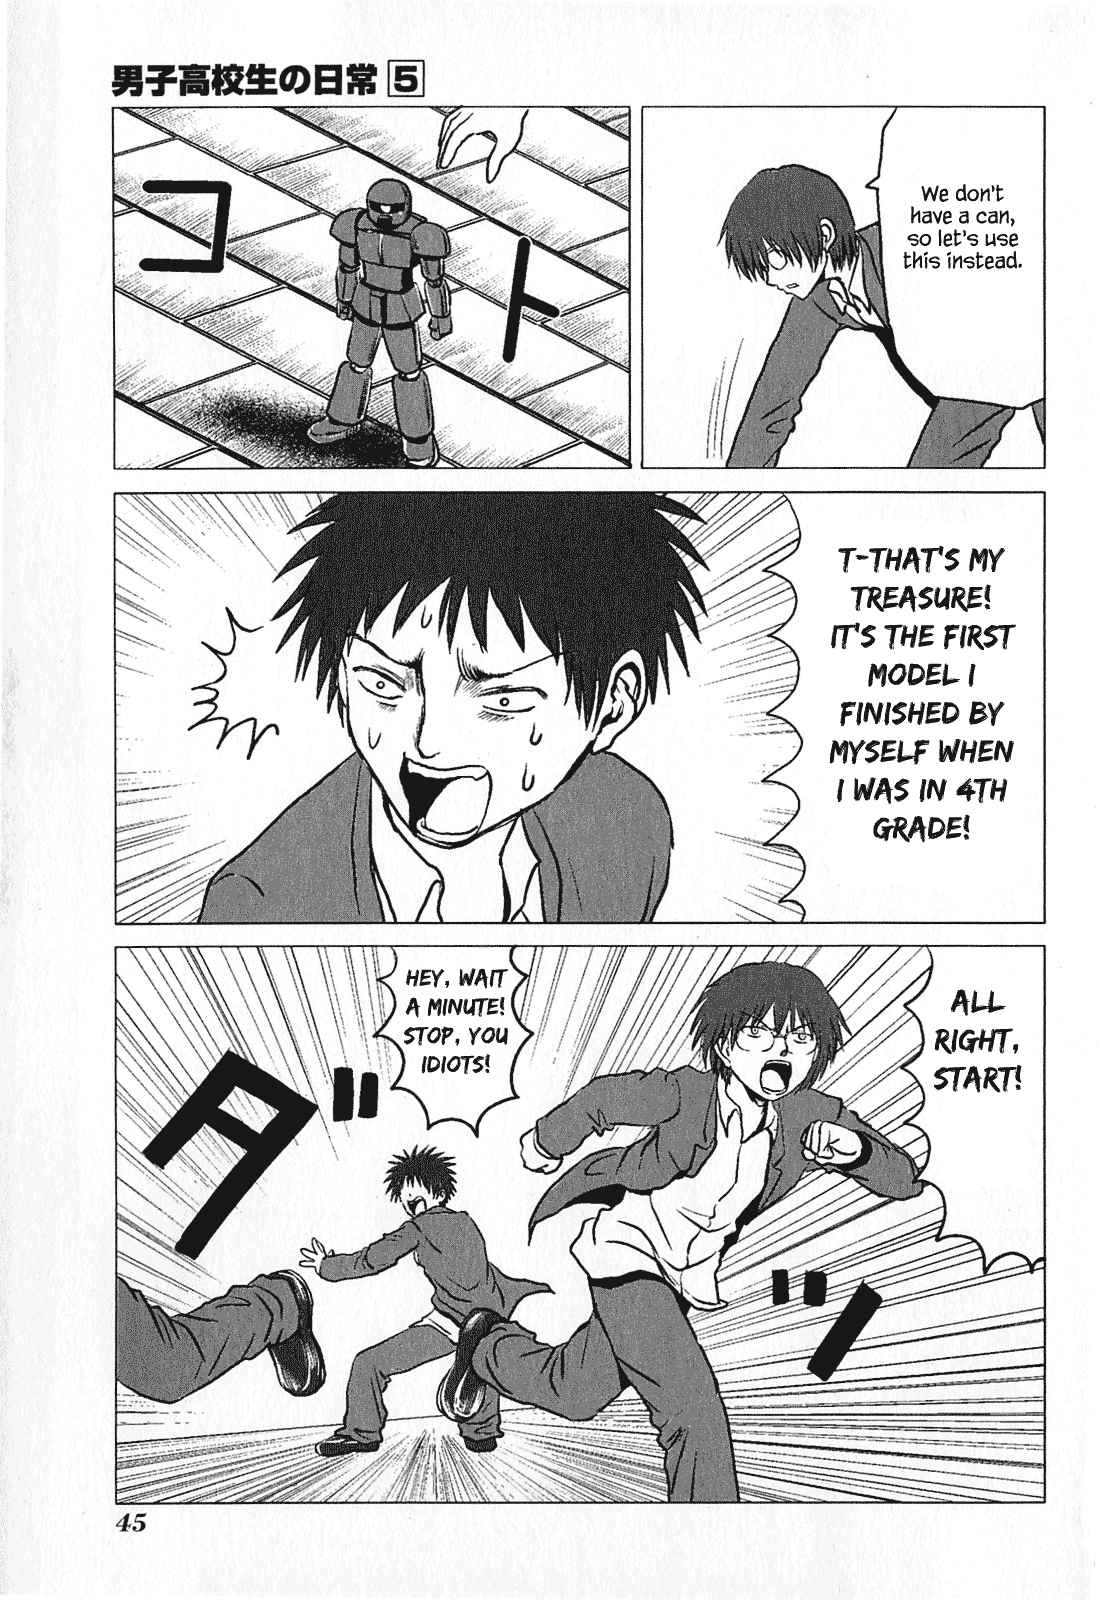 Danshi Koukousei no Nichijou Vol. 5 Ch. 73 High School Boys And Kick the Can